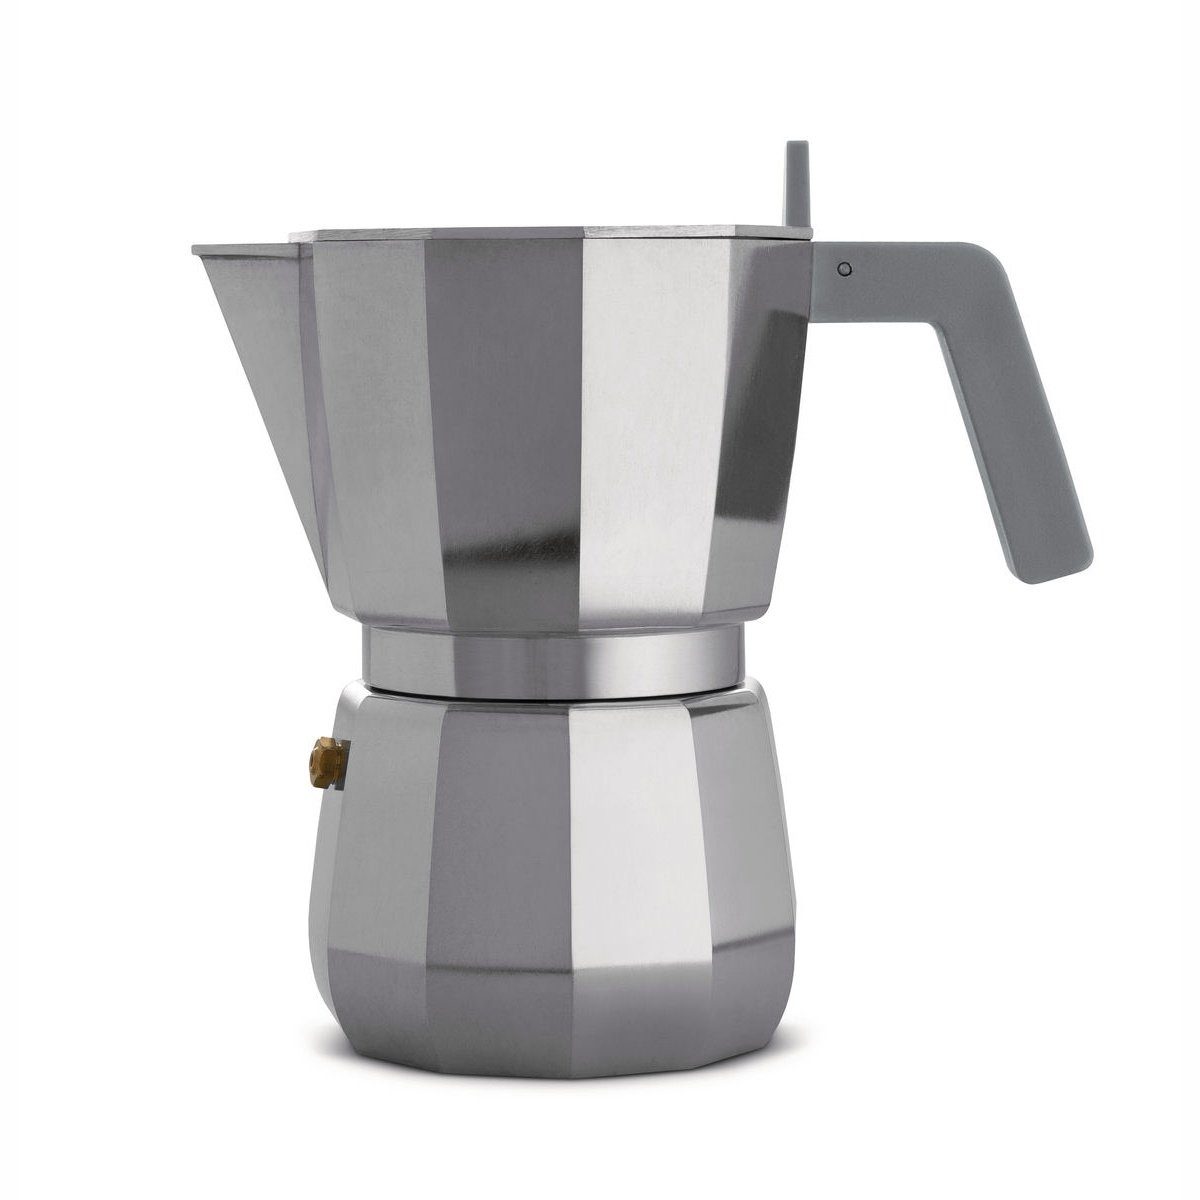 Espressokocher modern Induktion für Kaffeekanne, geeignet 0.3l Espressokocher 6, MOKA Nicht Alessi